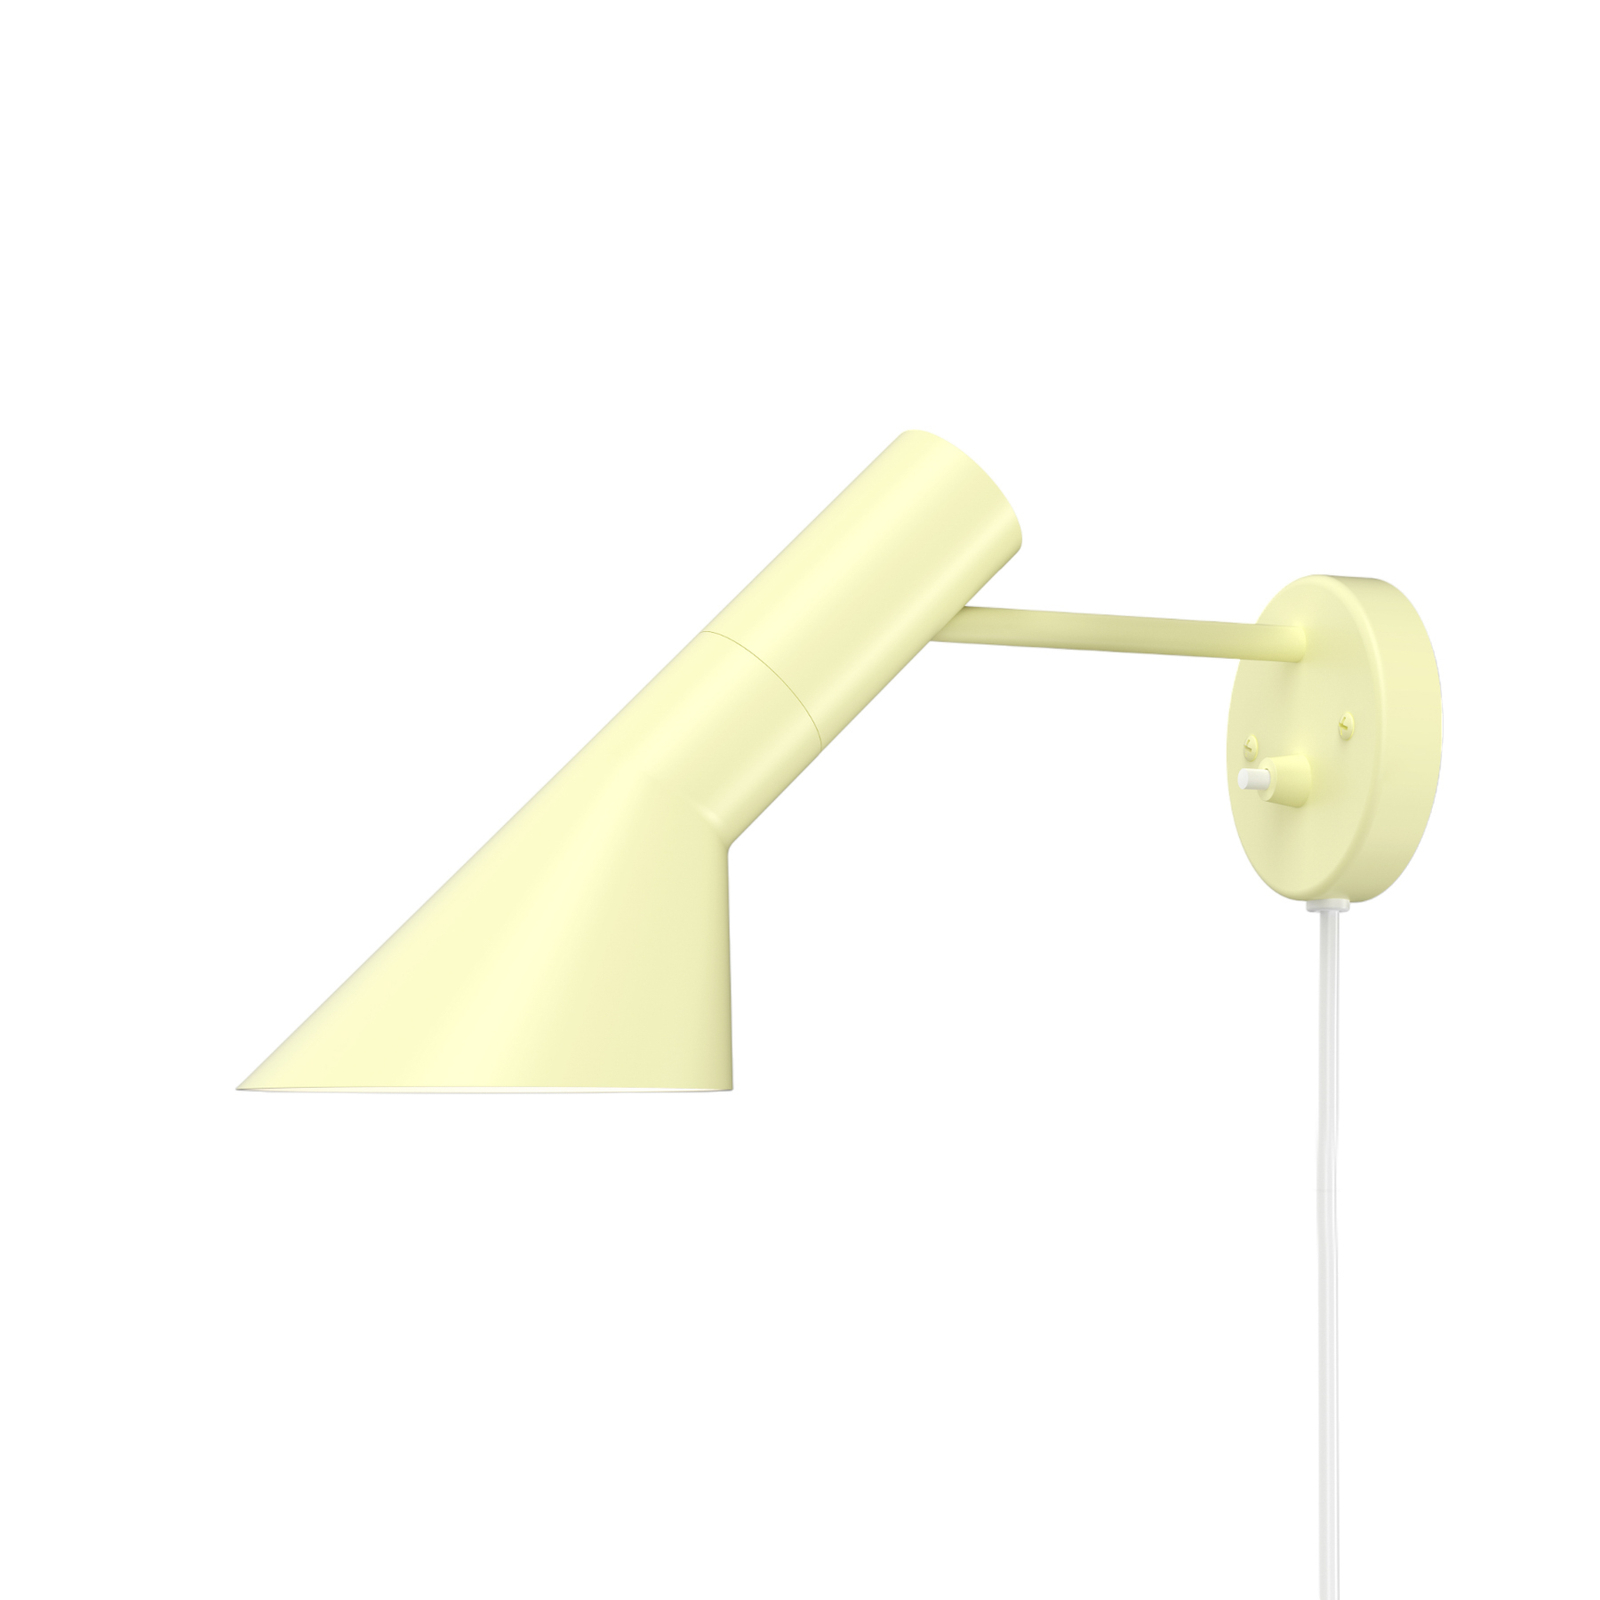 Louis Poulsen AJ designer væglampe lys gul